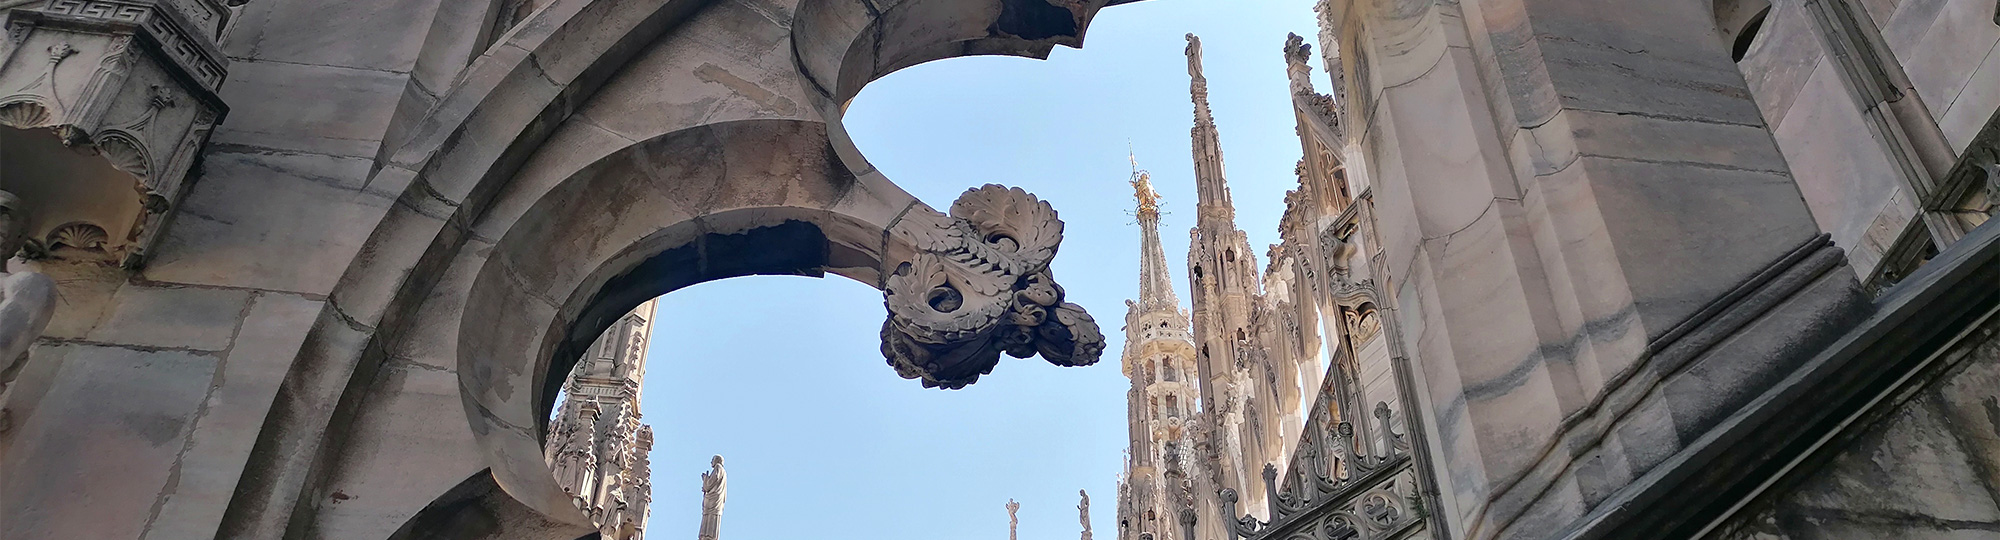 Sur le toit de marbre rose de la Cathédrale de Milan